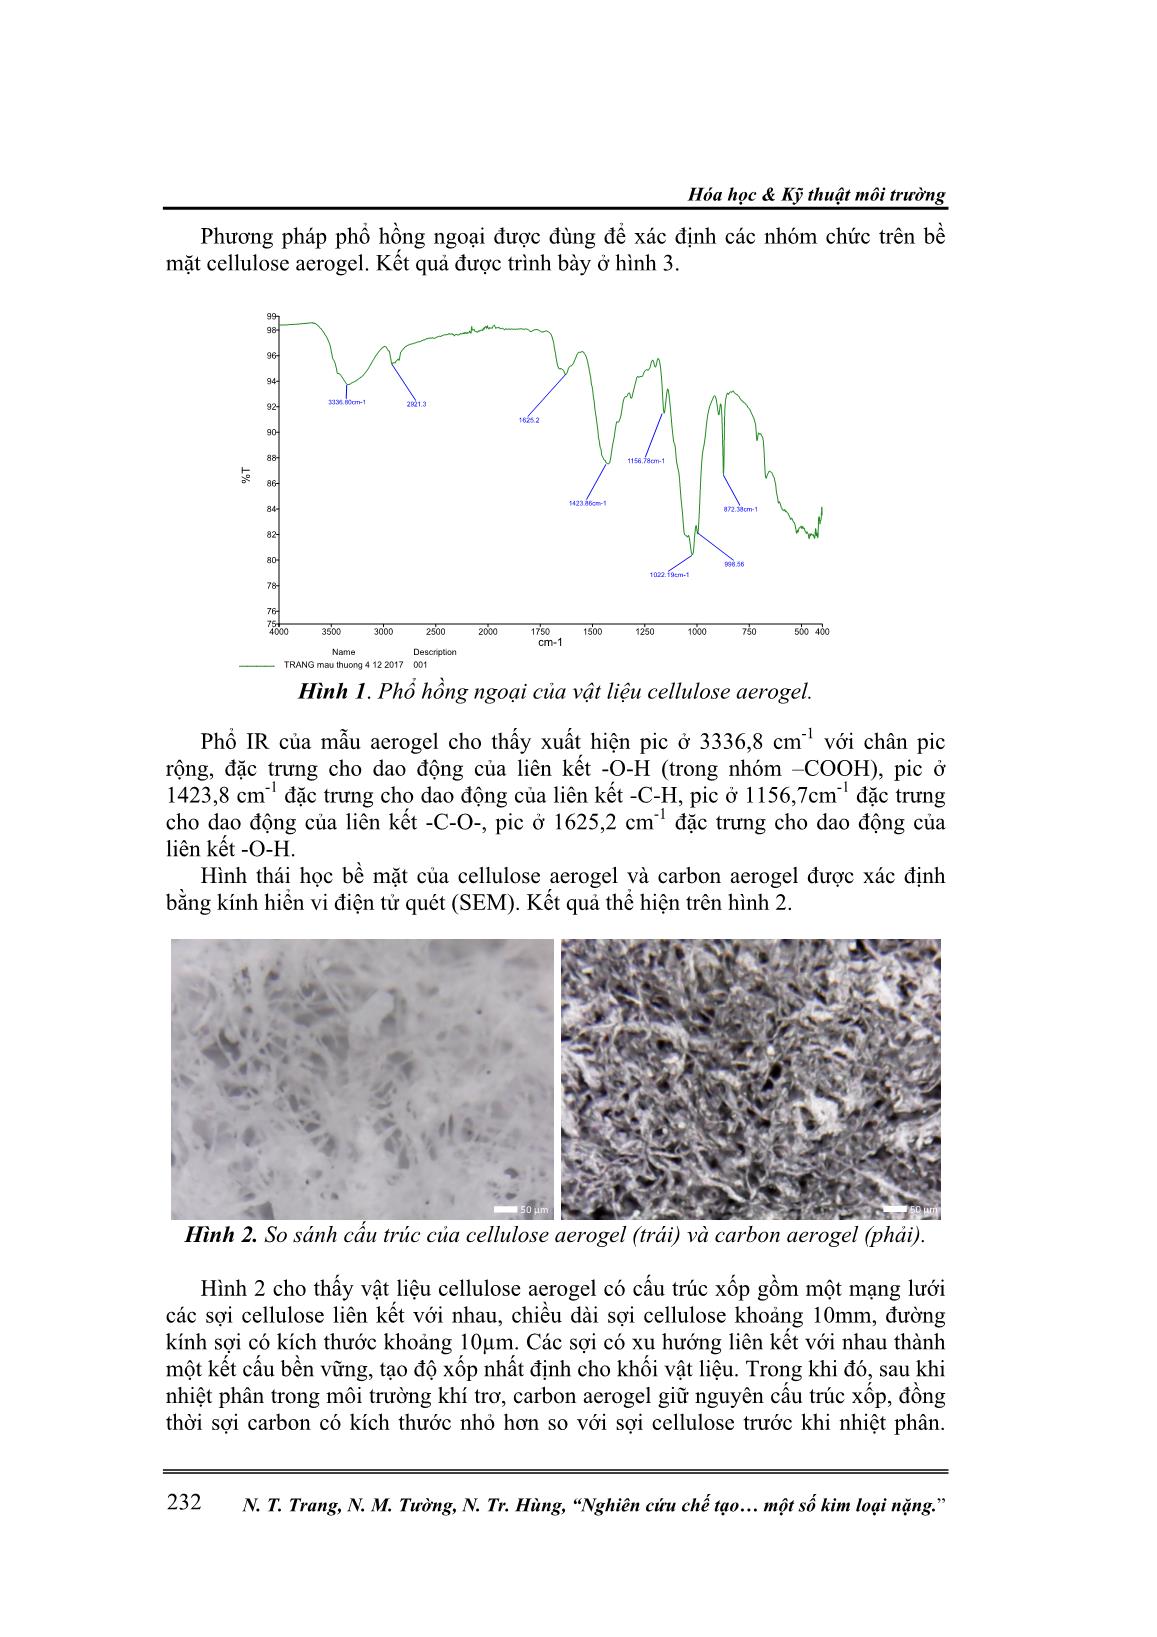 Nghiên cứu chế tạo Carbon Aerogel từ giấy phế thải ứng dụng hấp phụ một số kim loại nặng trang 4